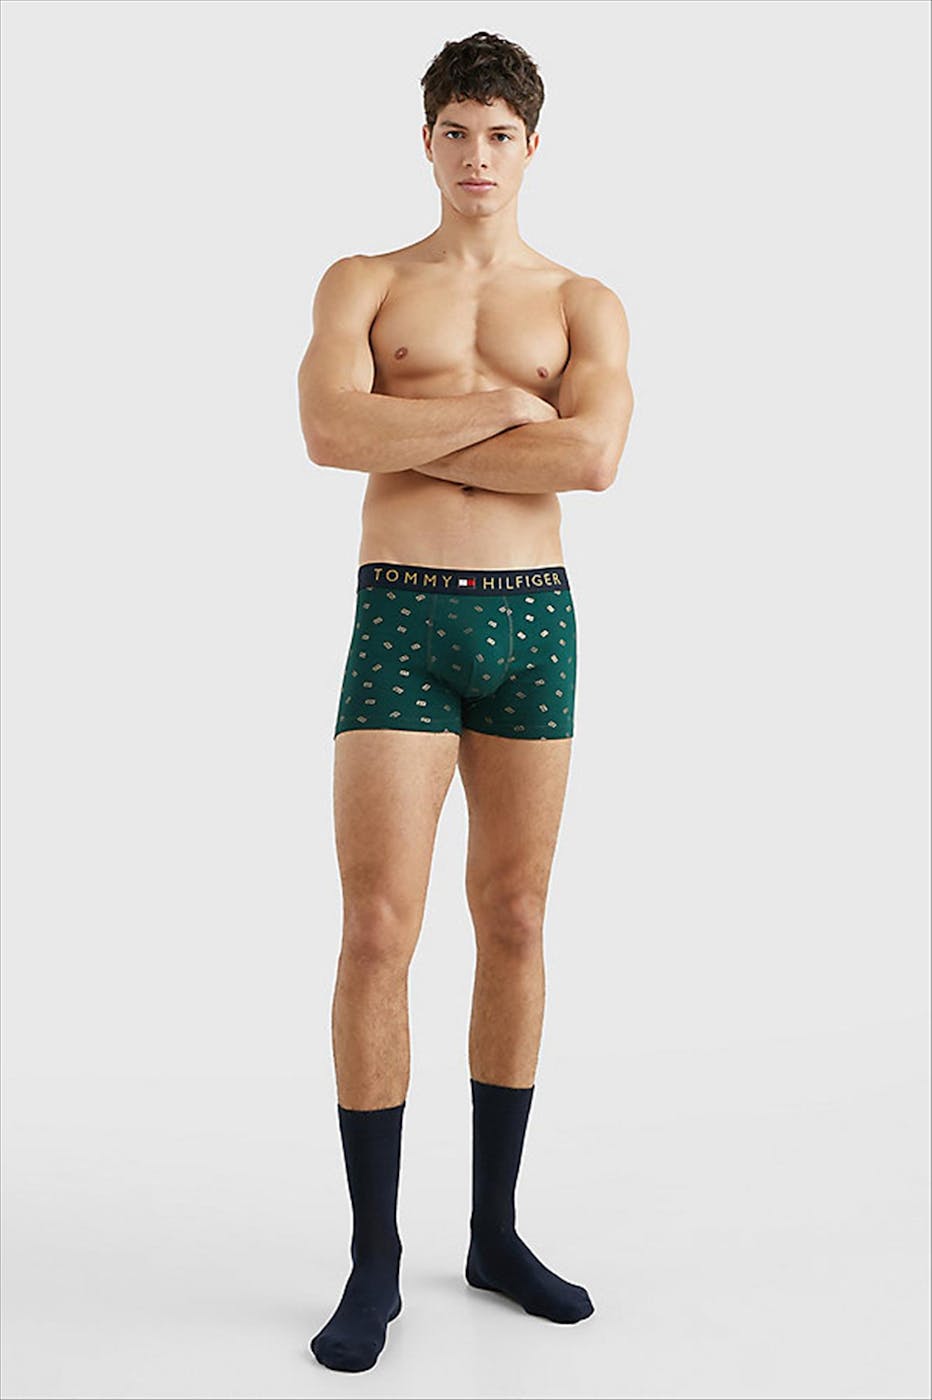 Tommy Hilfiger Underwear - Groene-donkerblauwe Boxershort-Kousen gift box